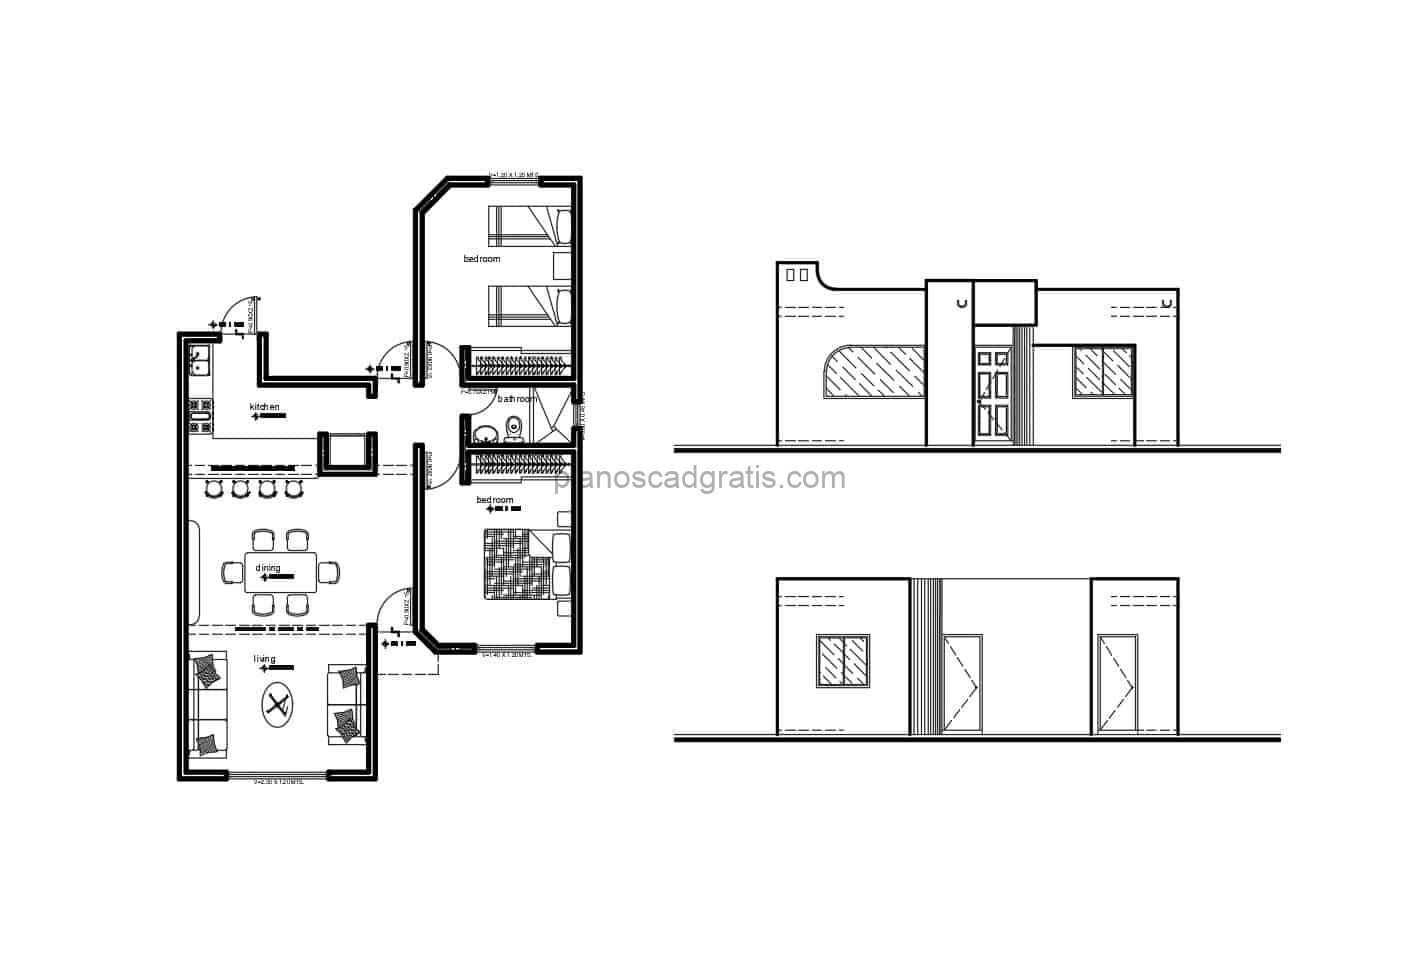 planos arquitectonicos y dimensionados de residencia sencilla de hormigon en un solo nivel con dos habitaciones, planos con dimensiones y detalles de cimentacion para descargar gratis en formato dwg de autocad